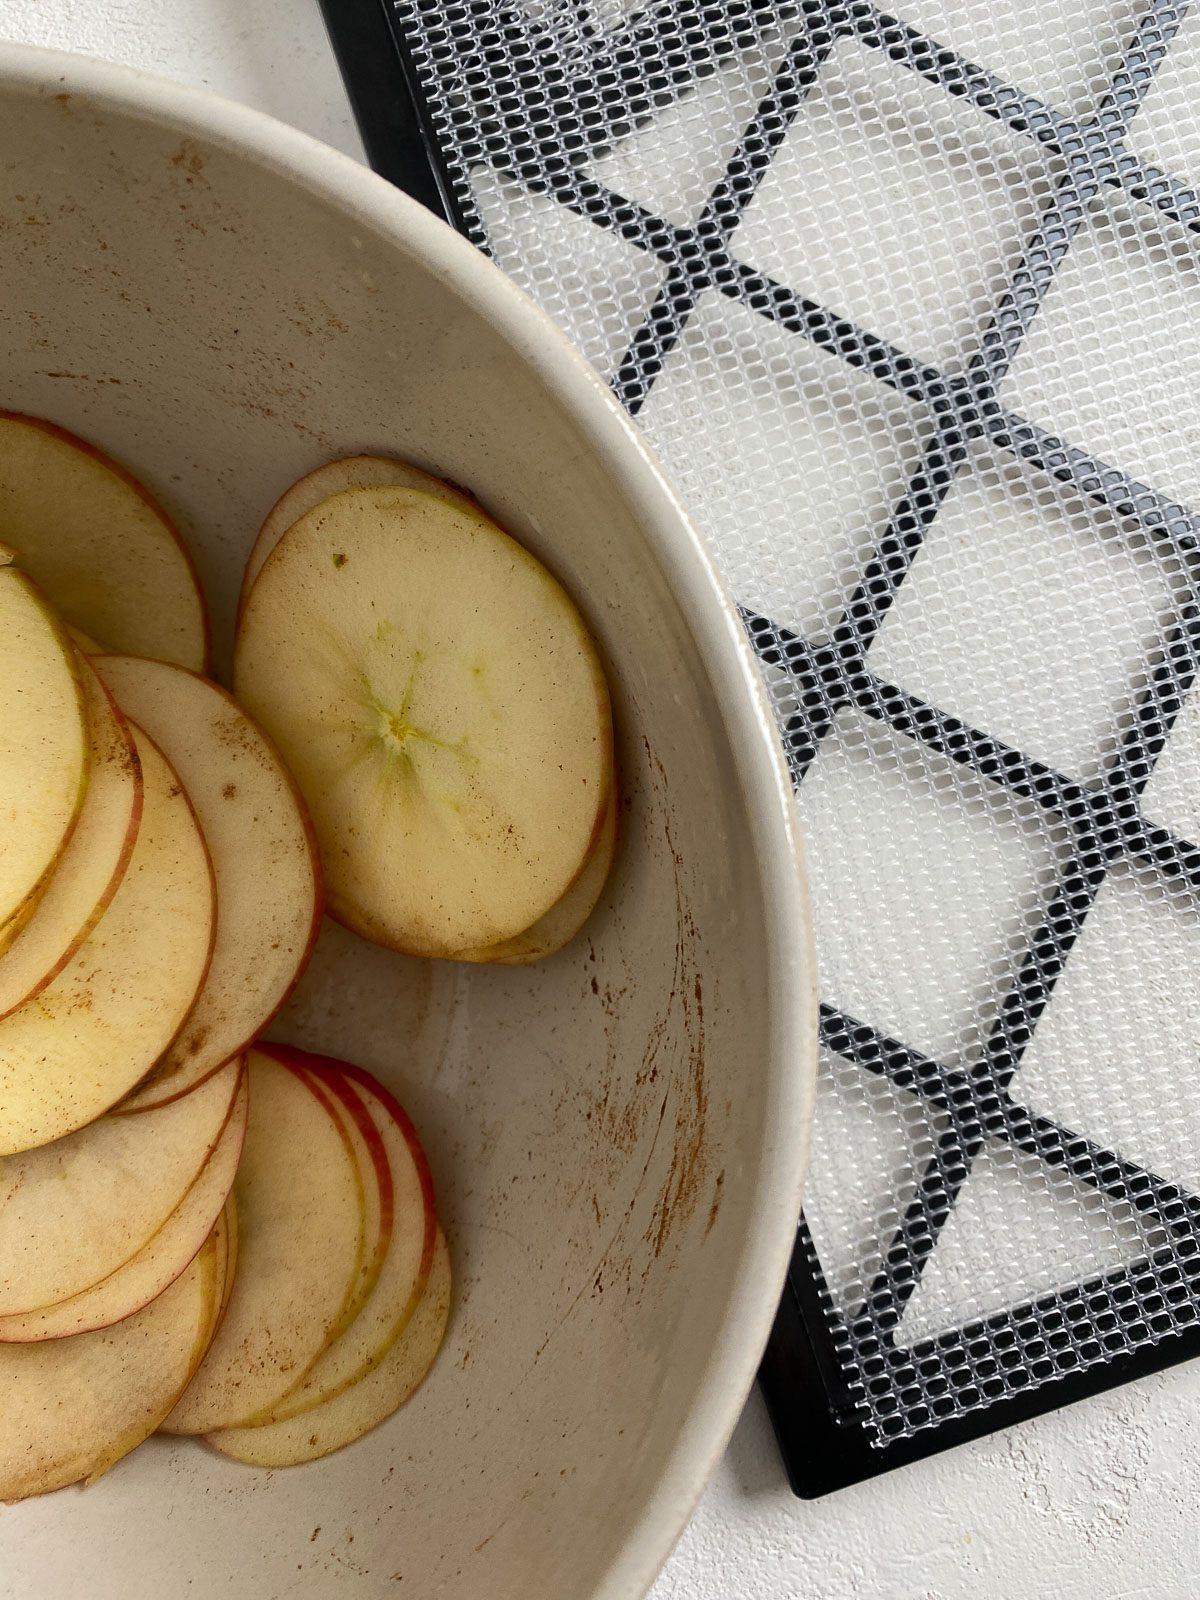 sliced apples in bowl alongside dehydrator tray